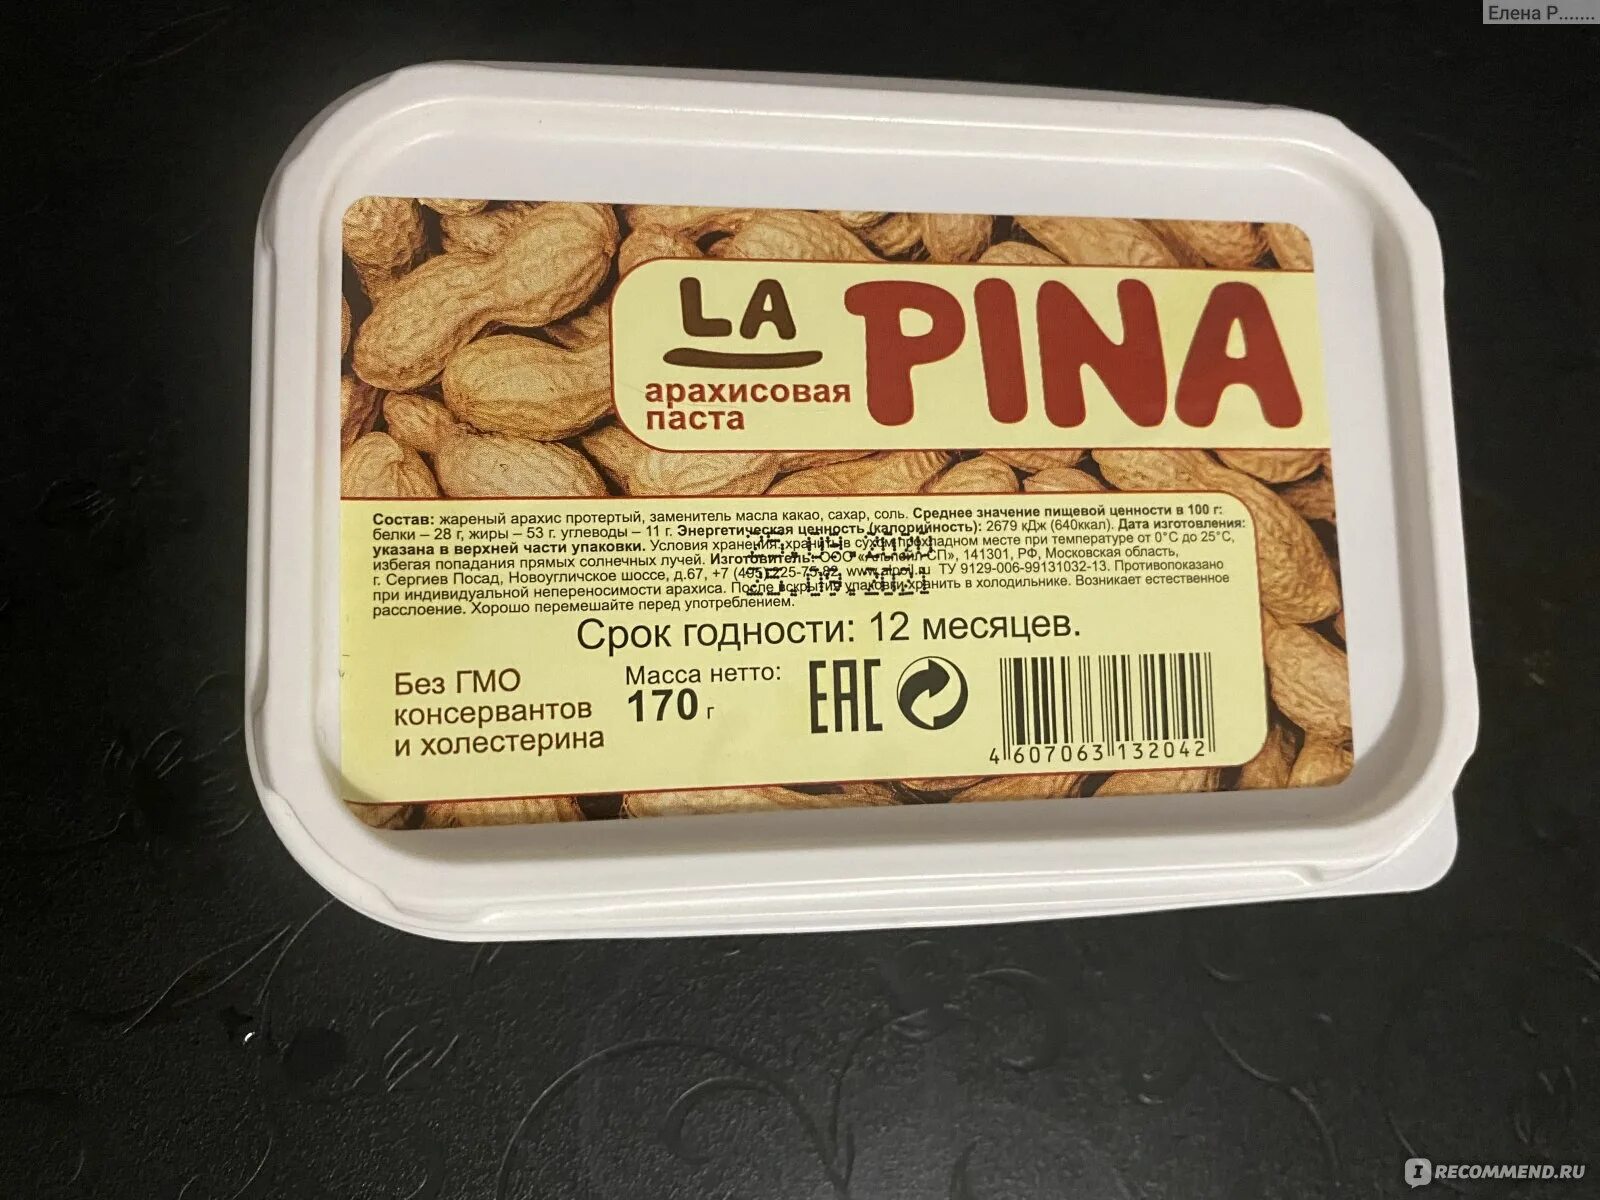 La Pina паста арахисовая. Арахисовая паста Альпойл. Арахисовая паста Fix Price. Ореховая арахисовая паста.